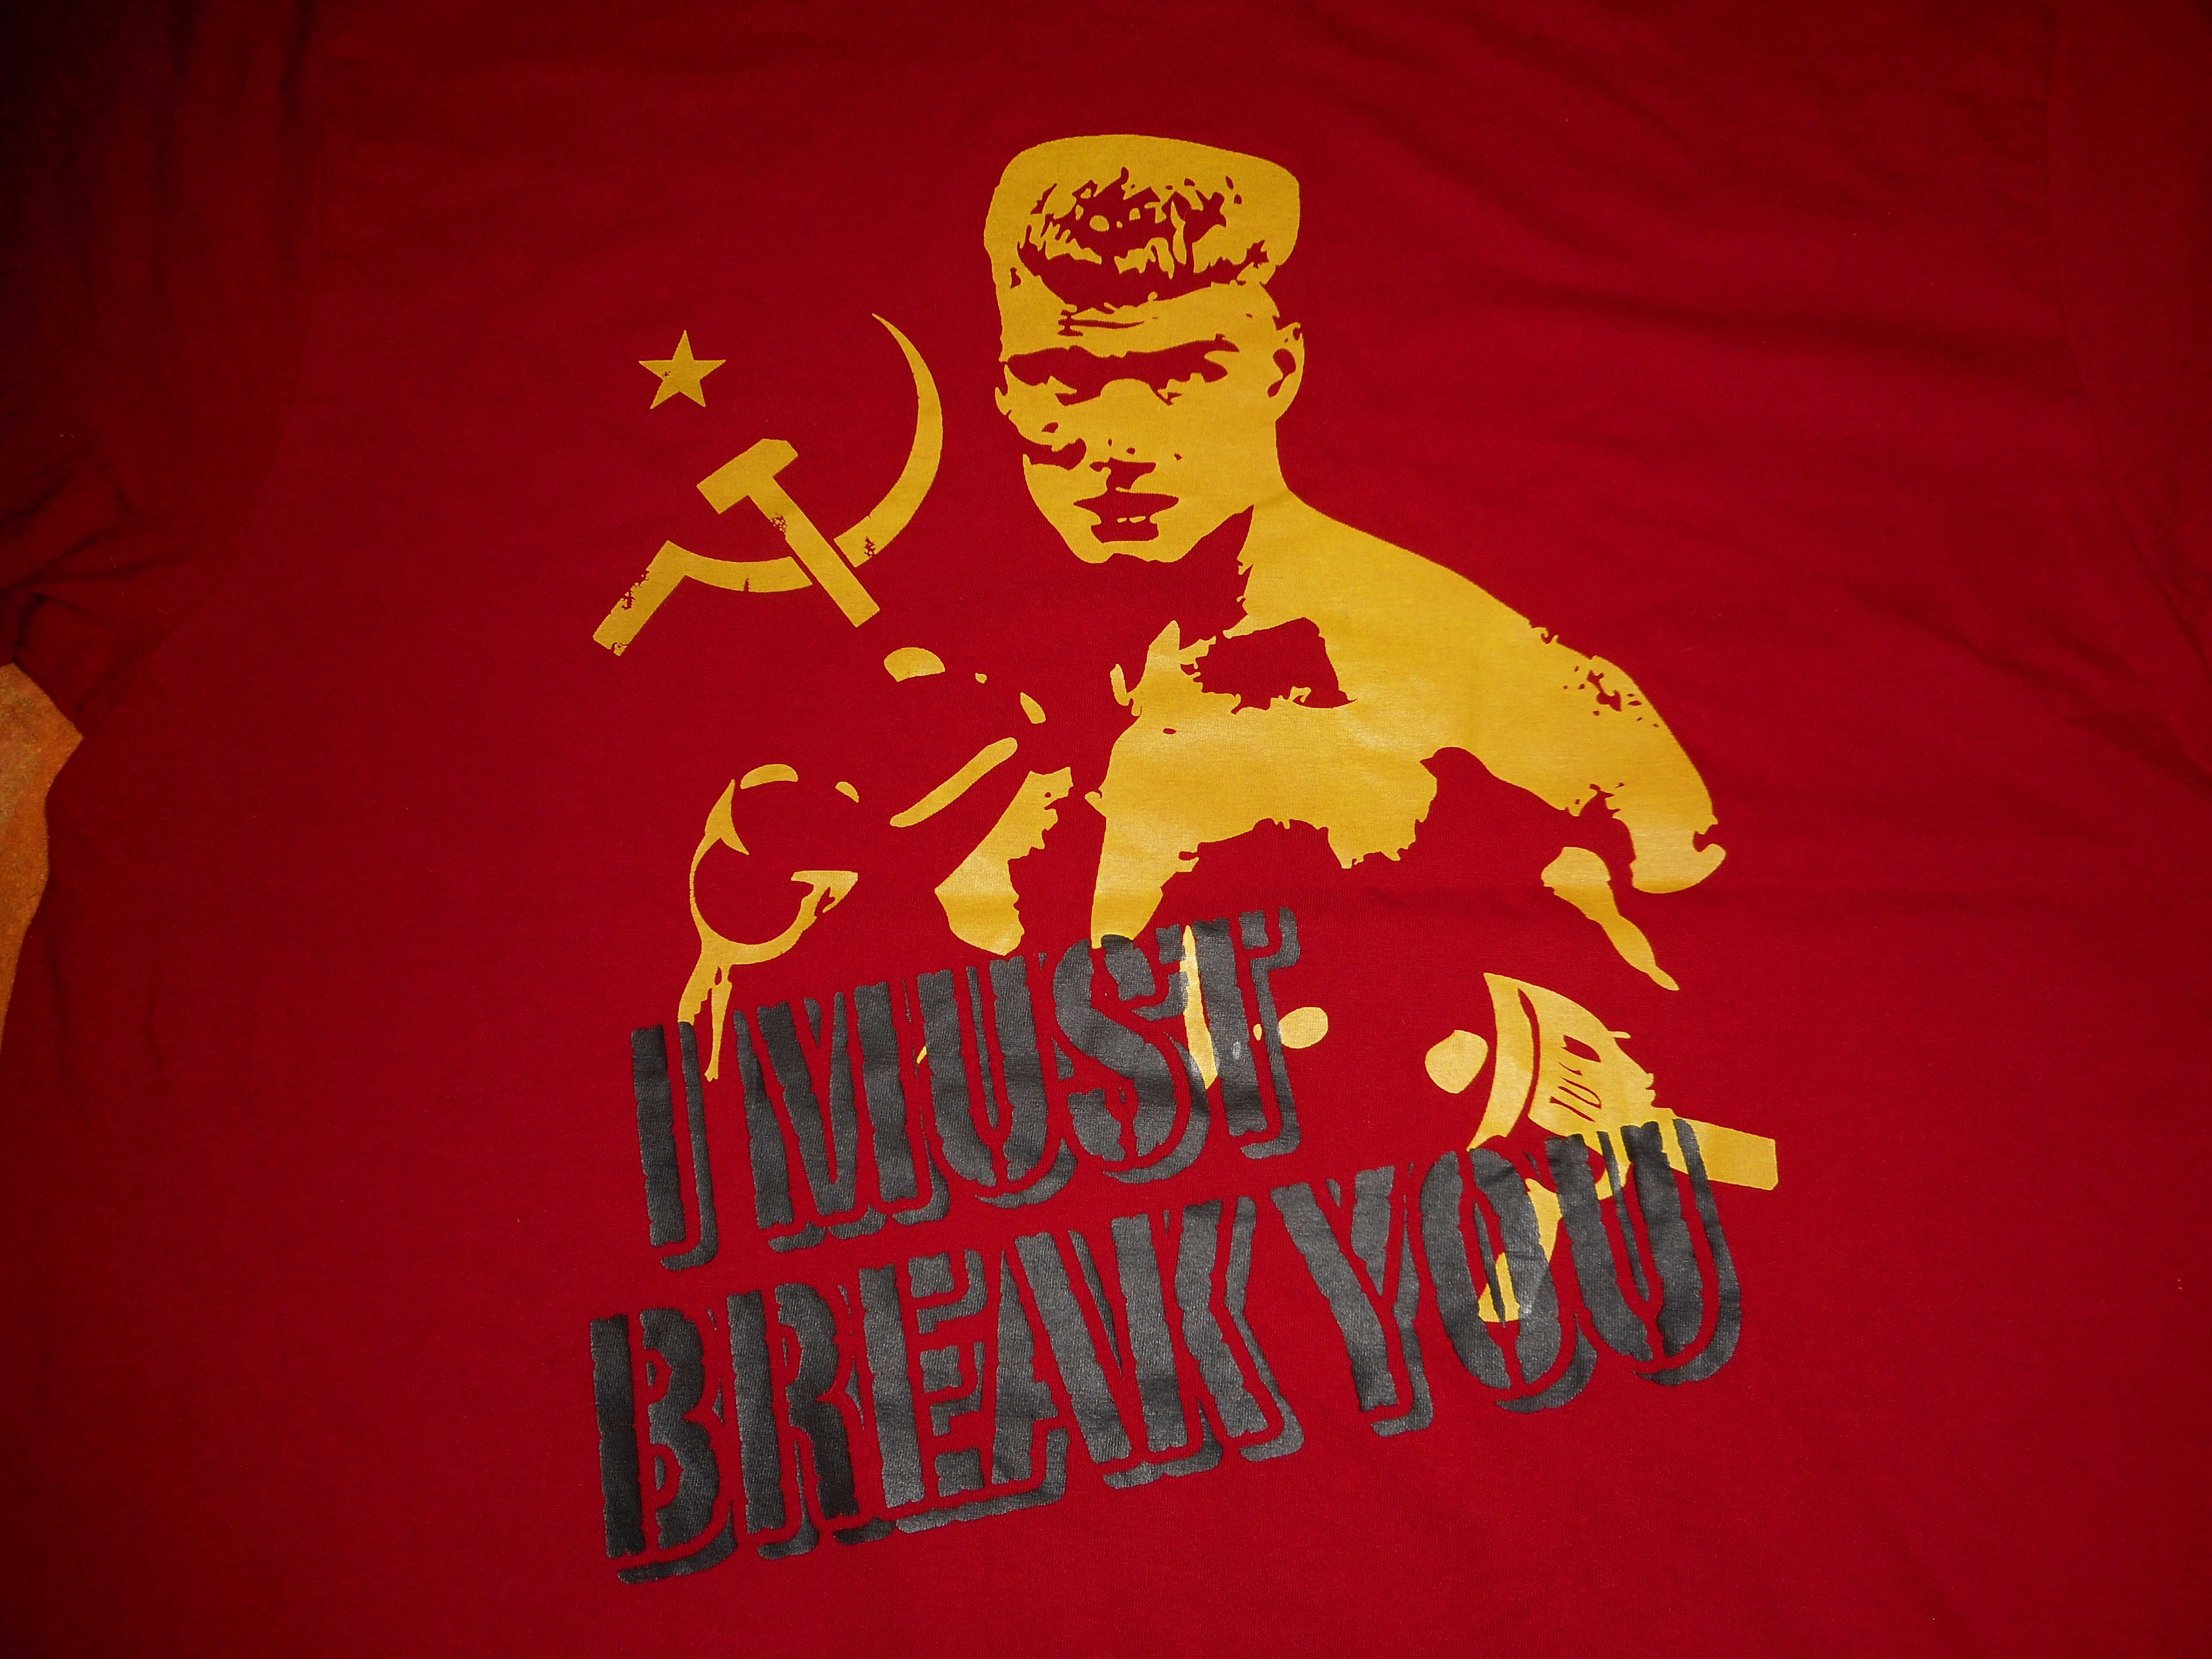 ROCKY BALBOA IVAN DRAGO L retro ZSRR BOKS film Rosja lewica antifa